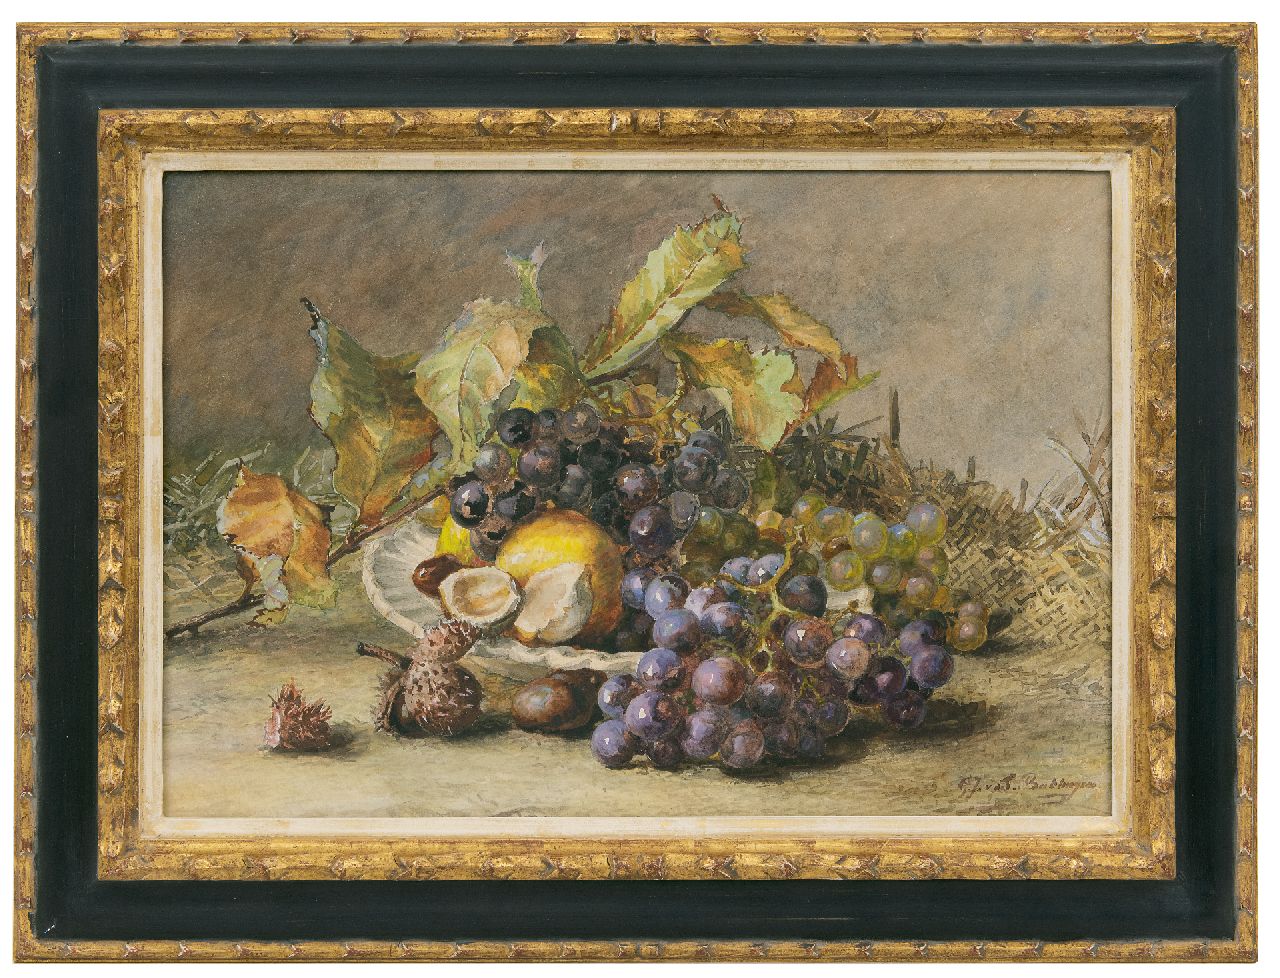 Sande Bakhuyzen G.J. van de | 'Gerardine' Jacoba van de Sande Bakhuyzen, A still life with grapes and chestnuts, watercolour on paper 34.5 x 50.3 cm, signed l.r.